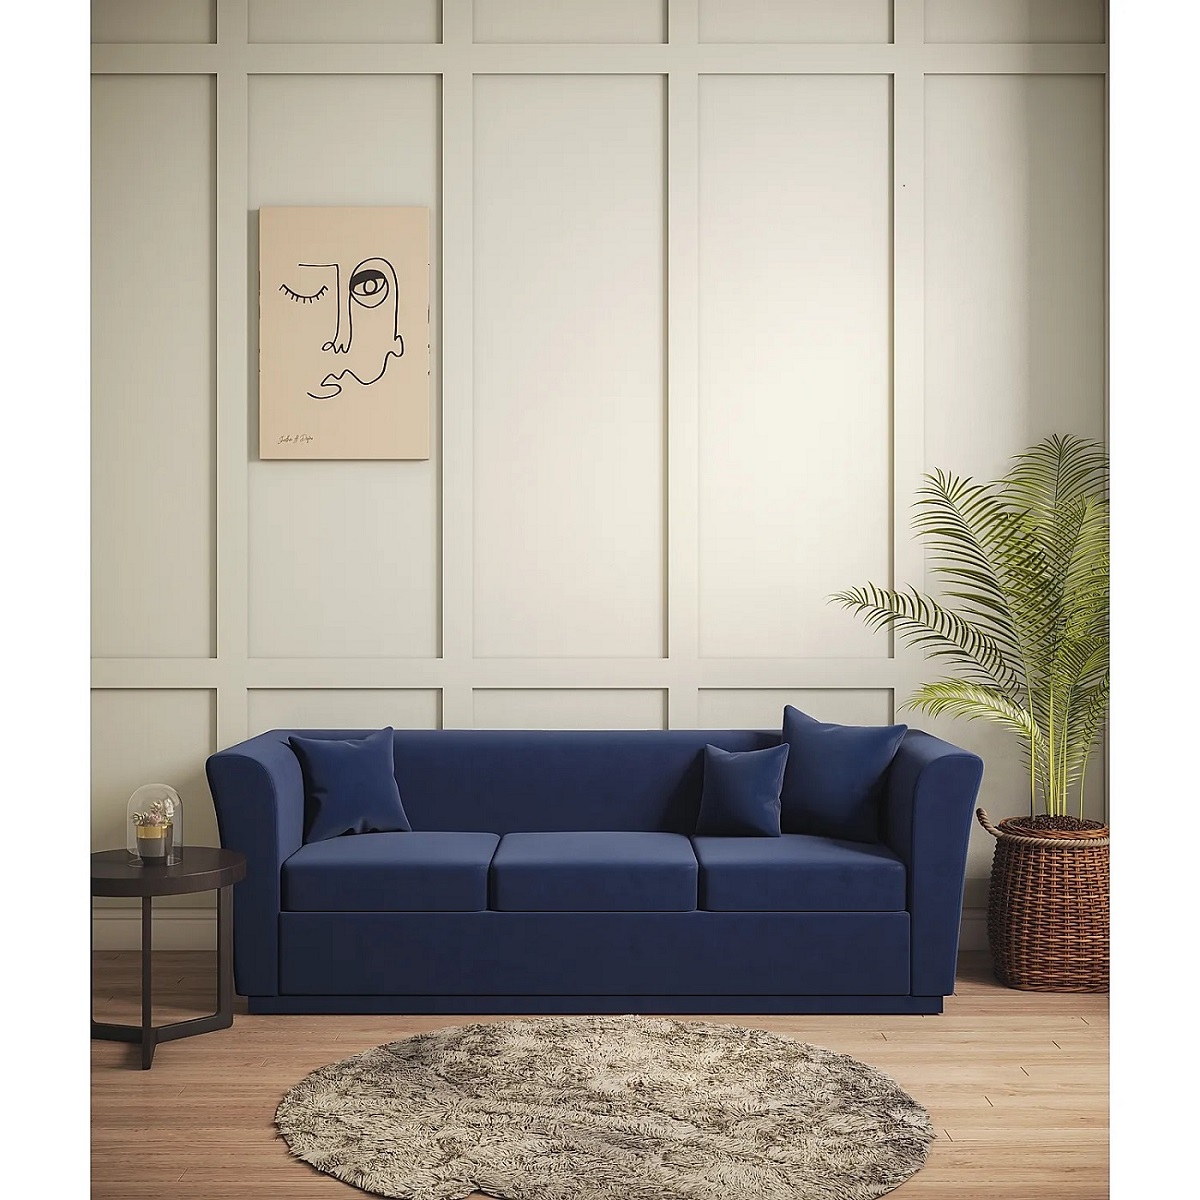 Explore Furnmill's Stylish Sofa Collection - Delhi Furniture